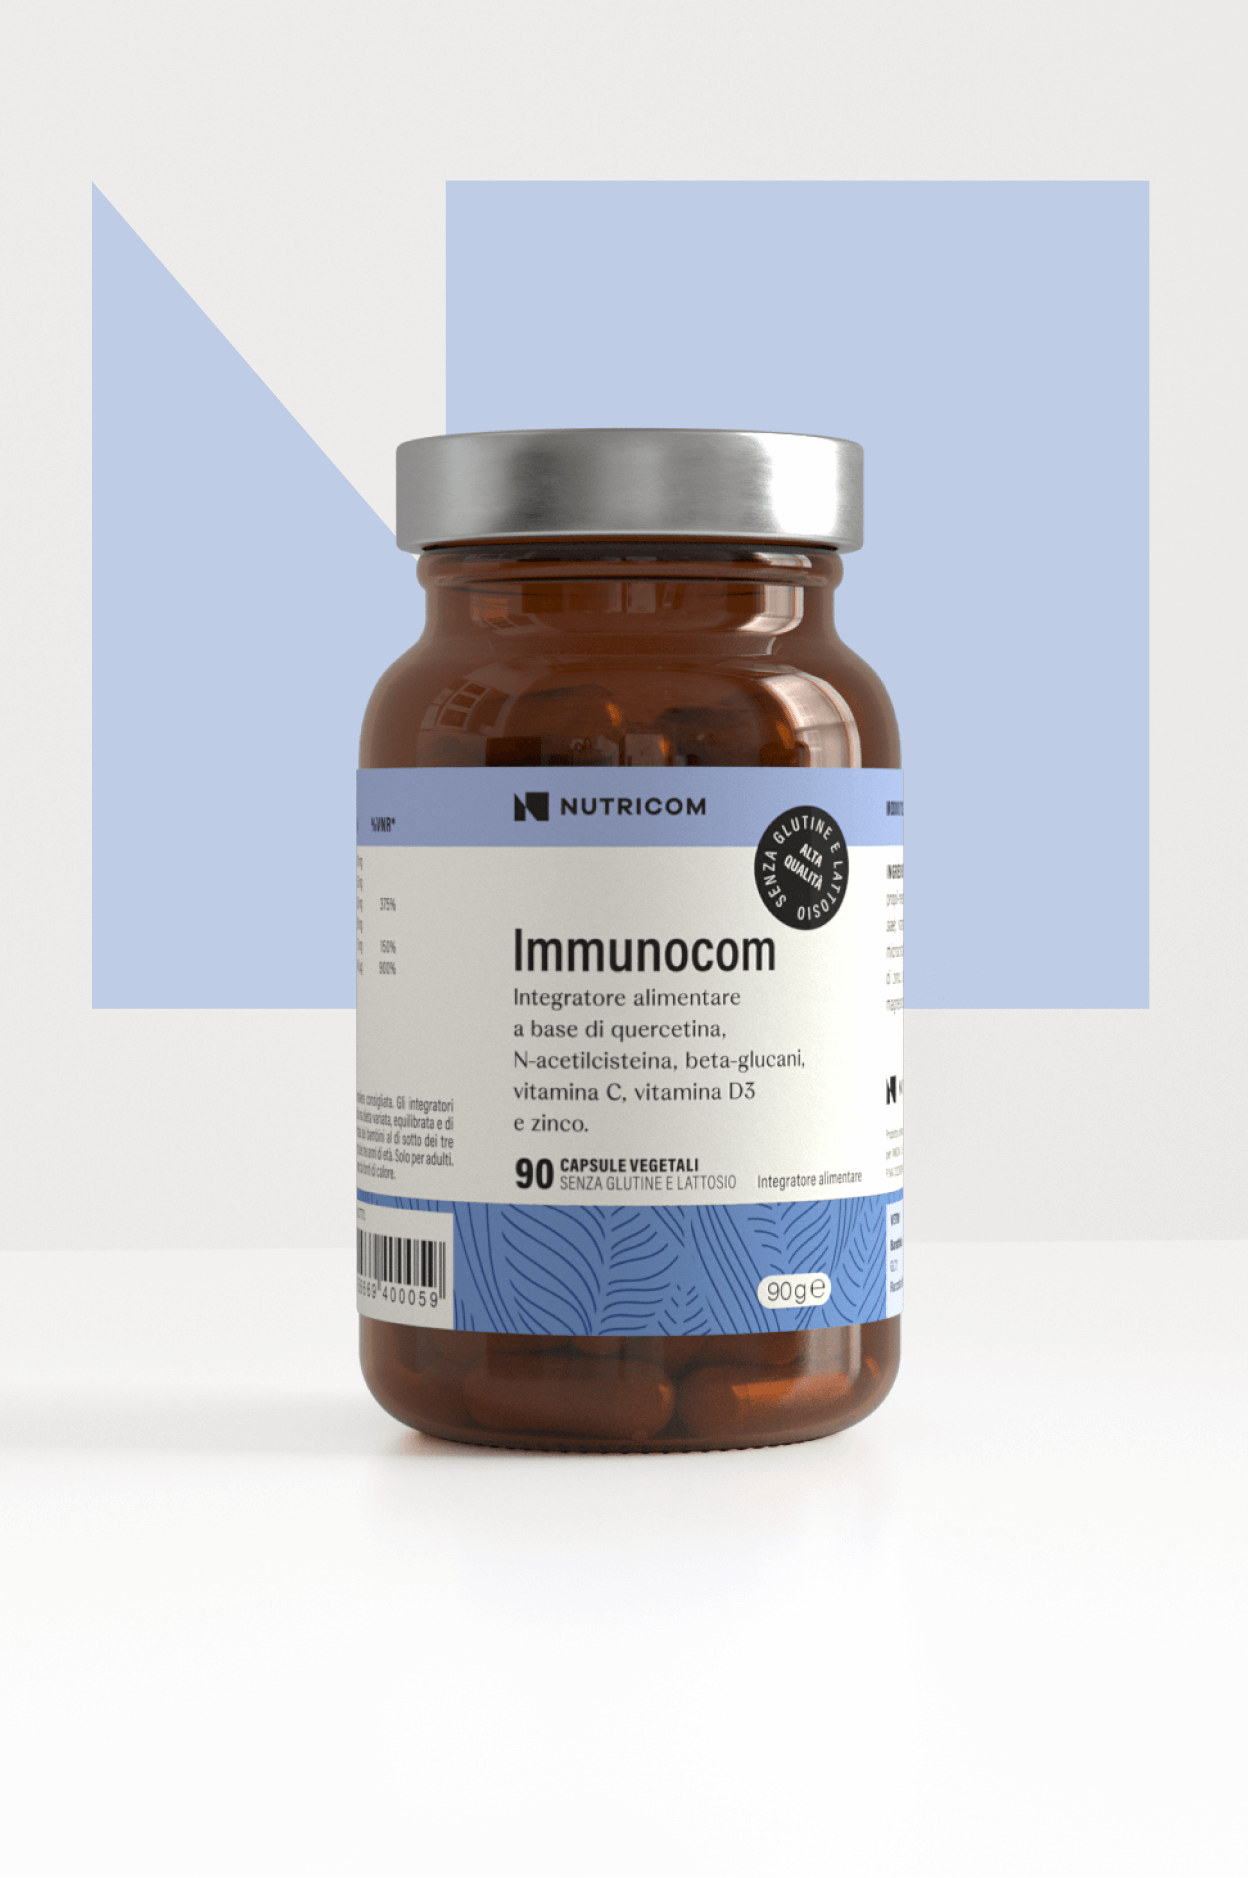 Immunocom